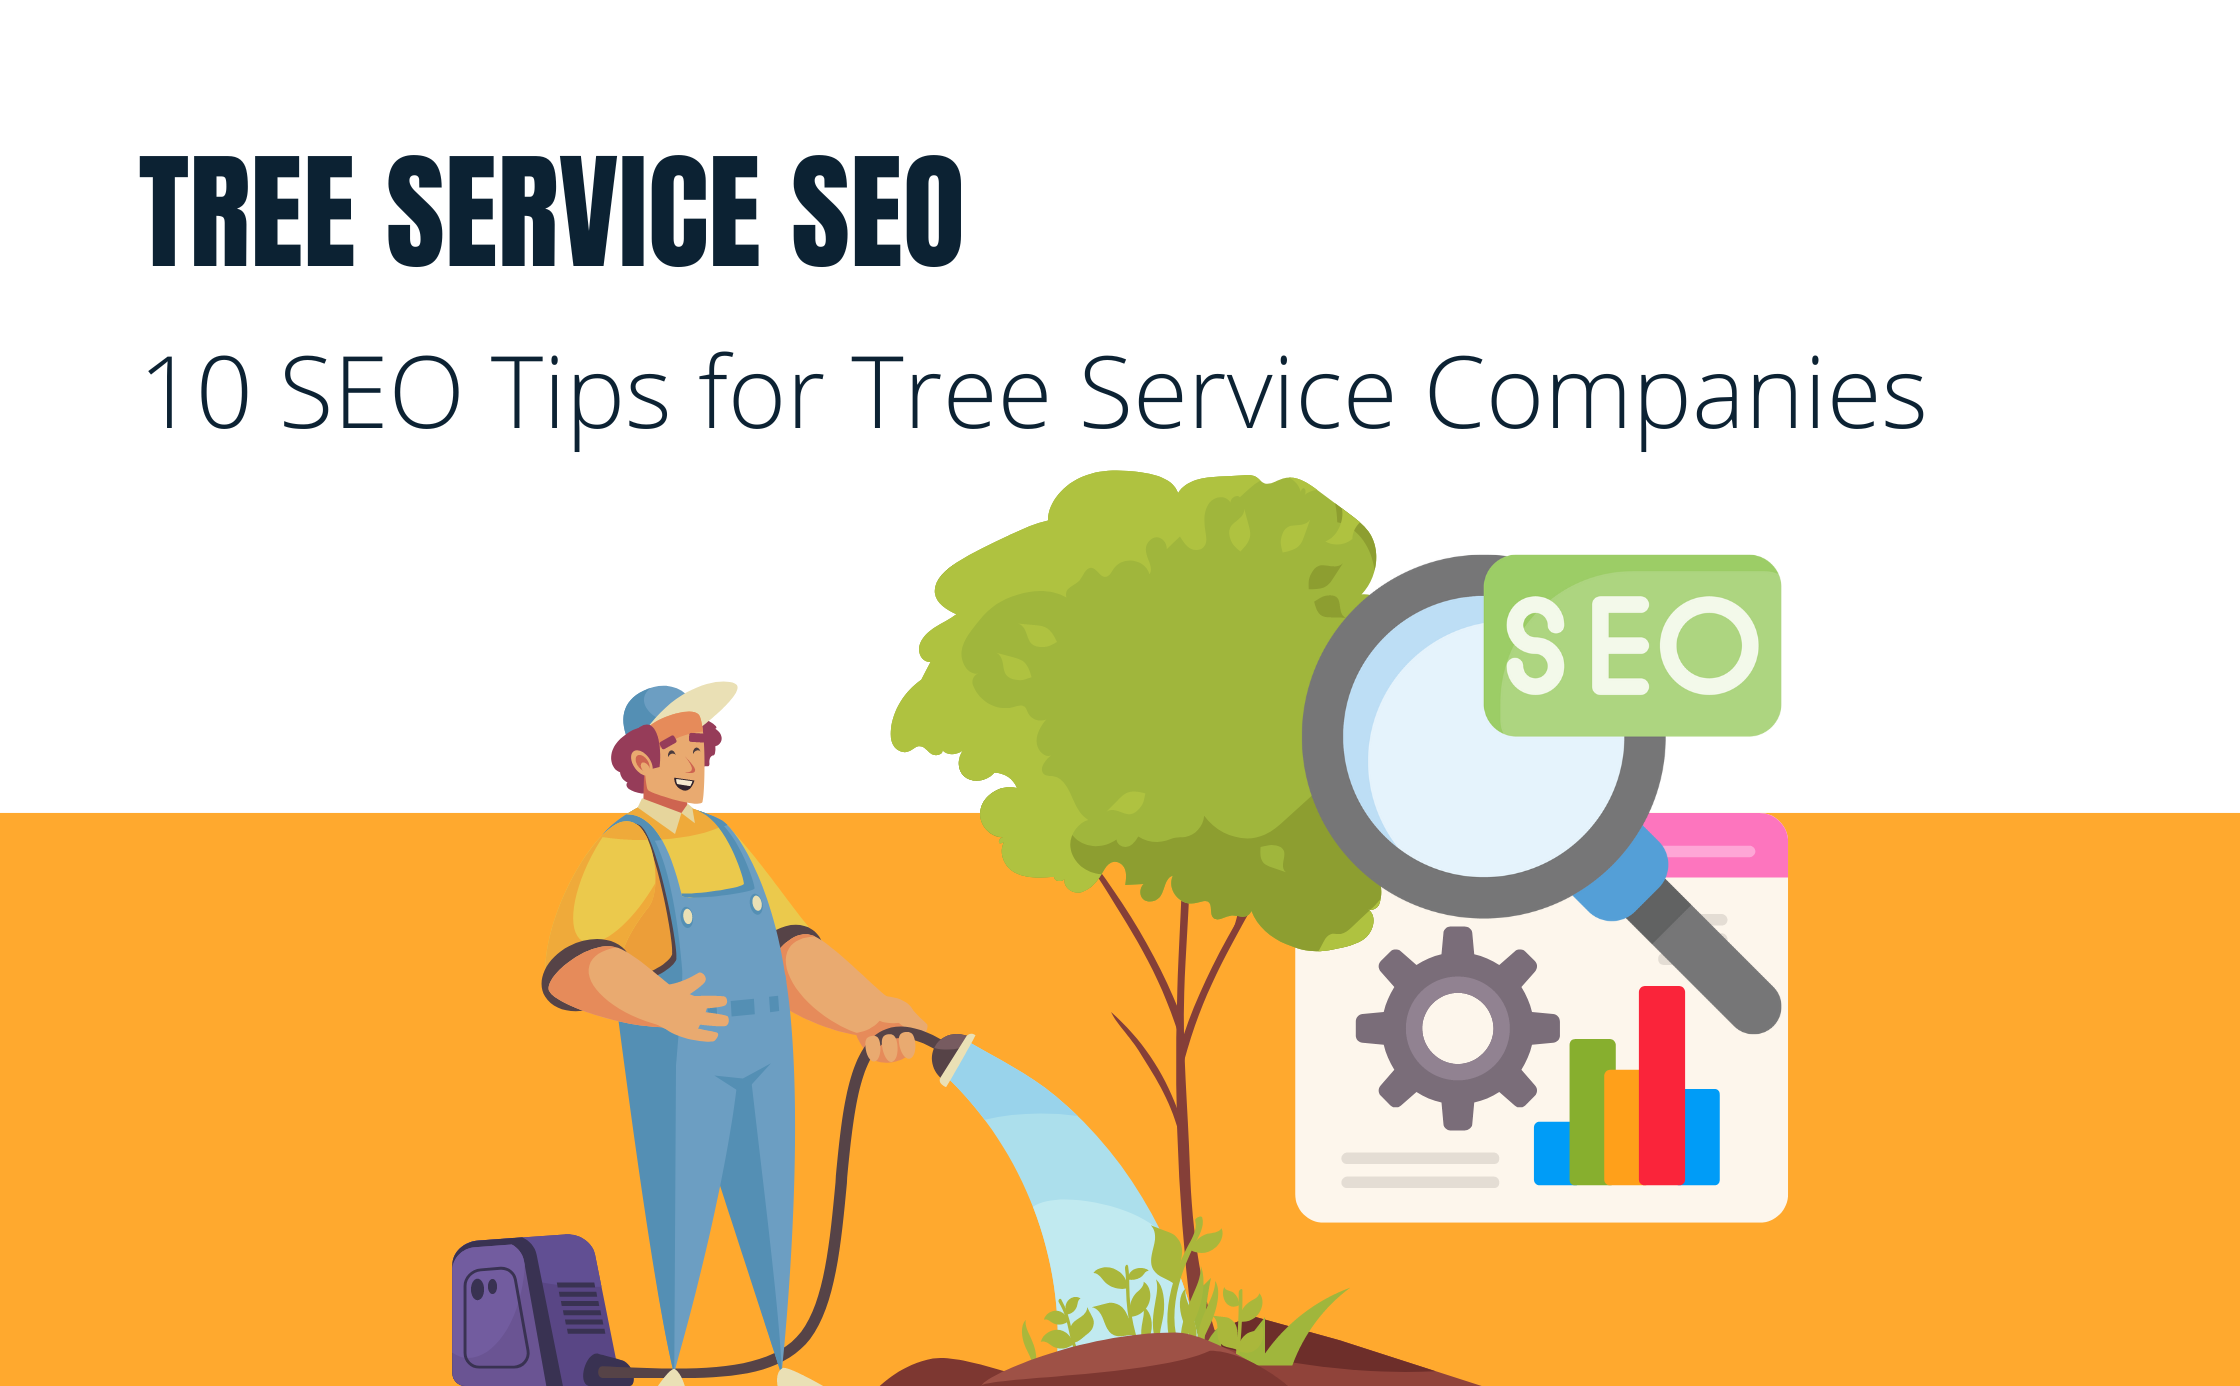 Tree Service SEO: 10 SEO Tips for Tree Service Companies